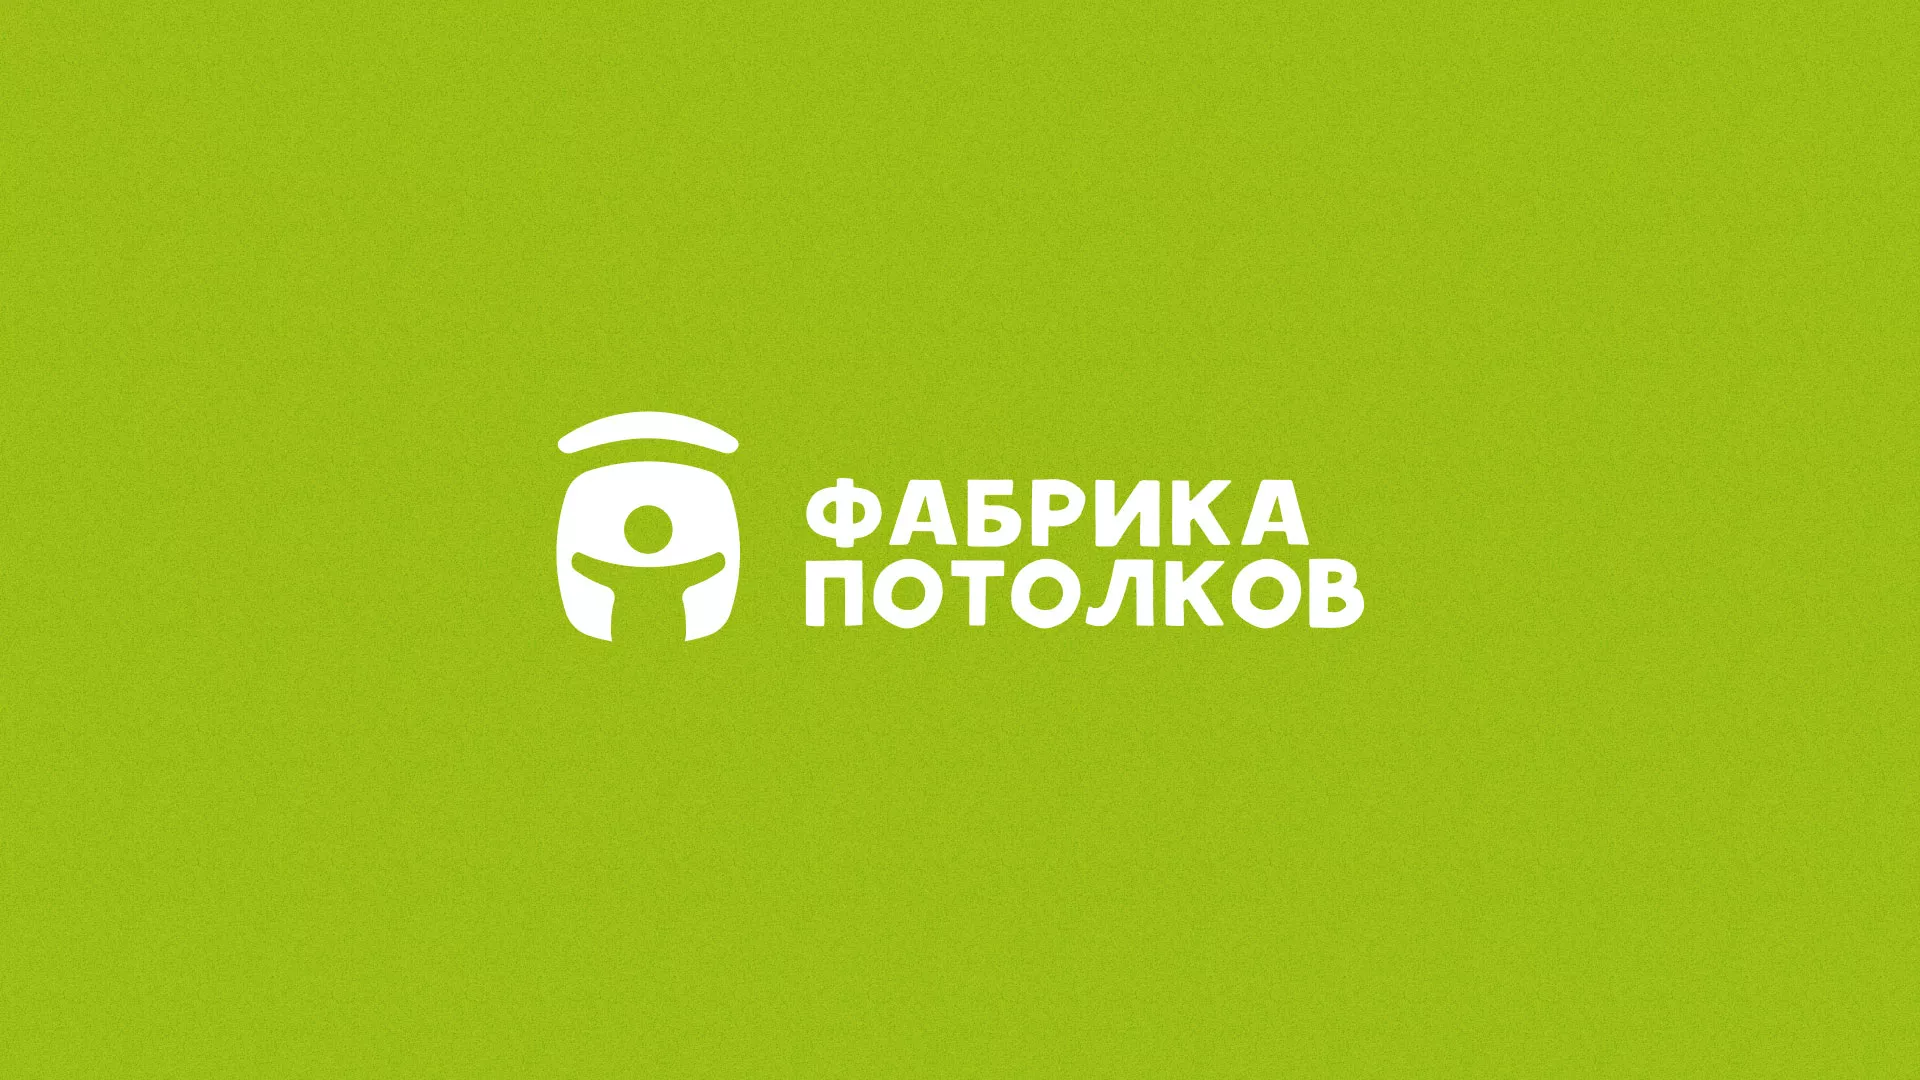 Разработка логотипа для производства натяжных потолков в Славске